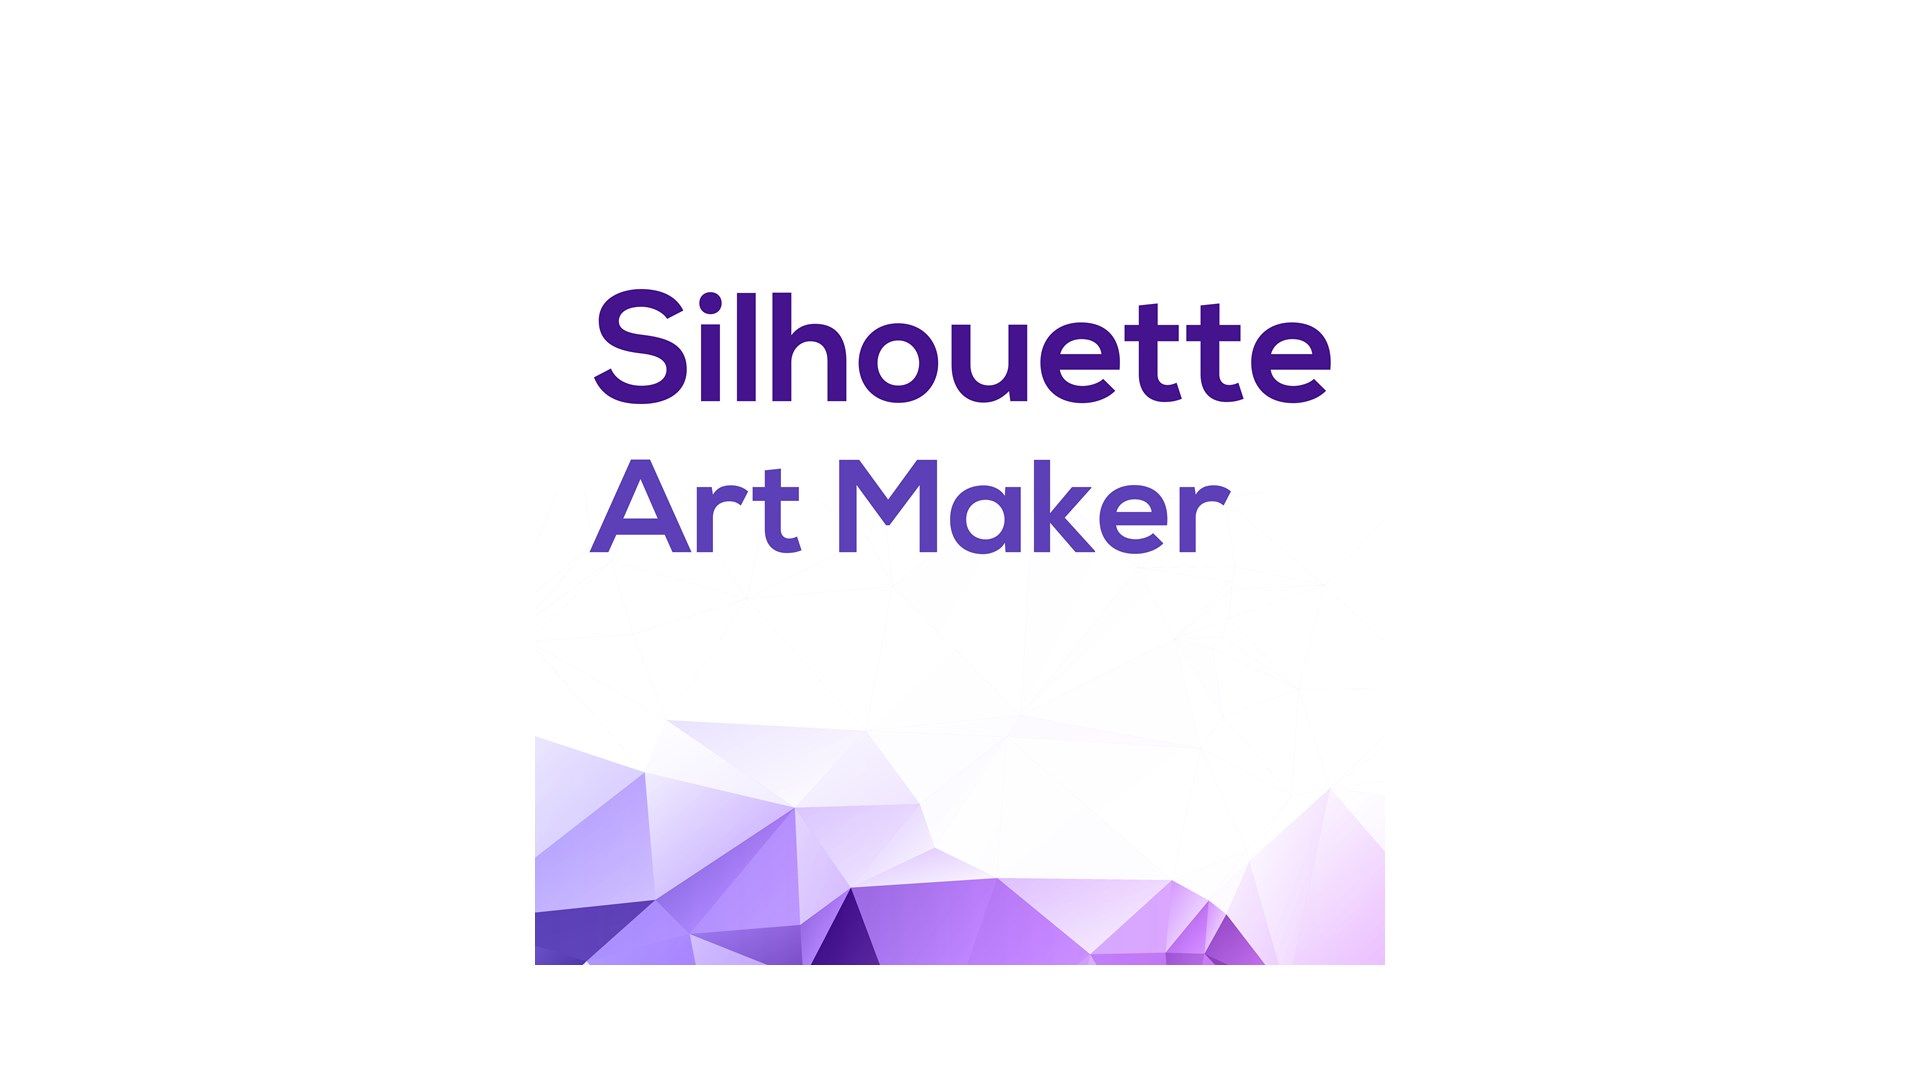 Silhouette Art Maker